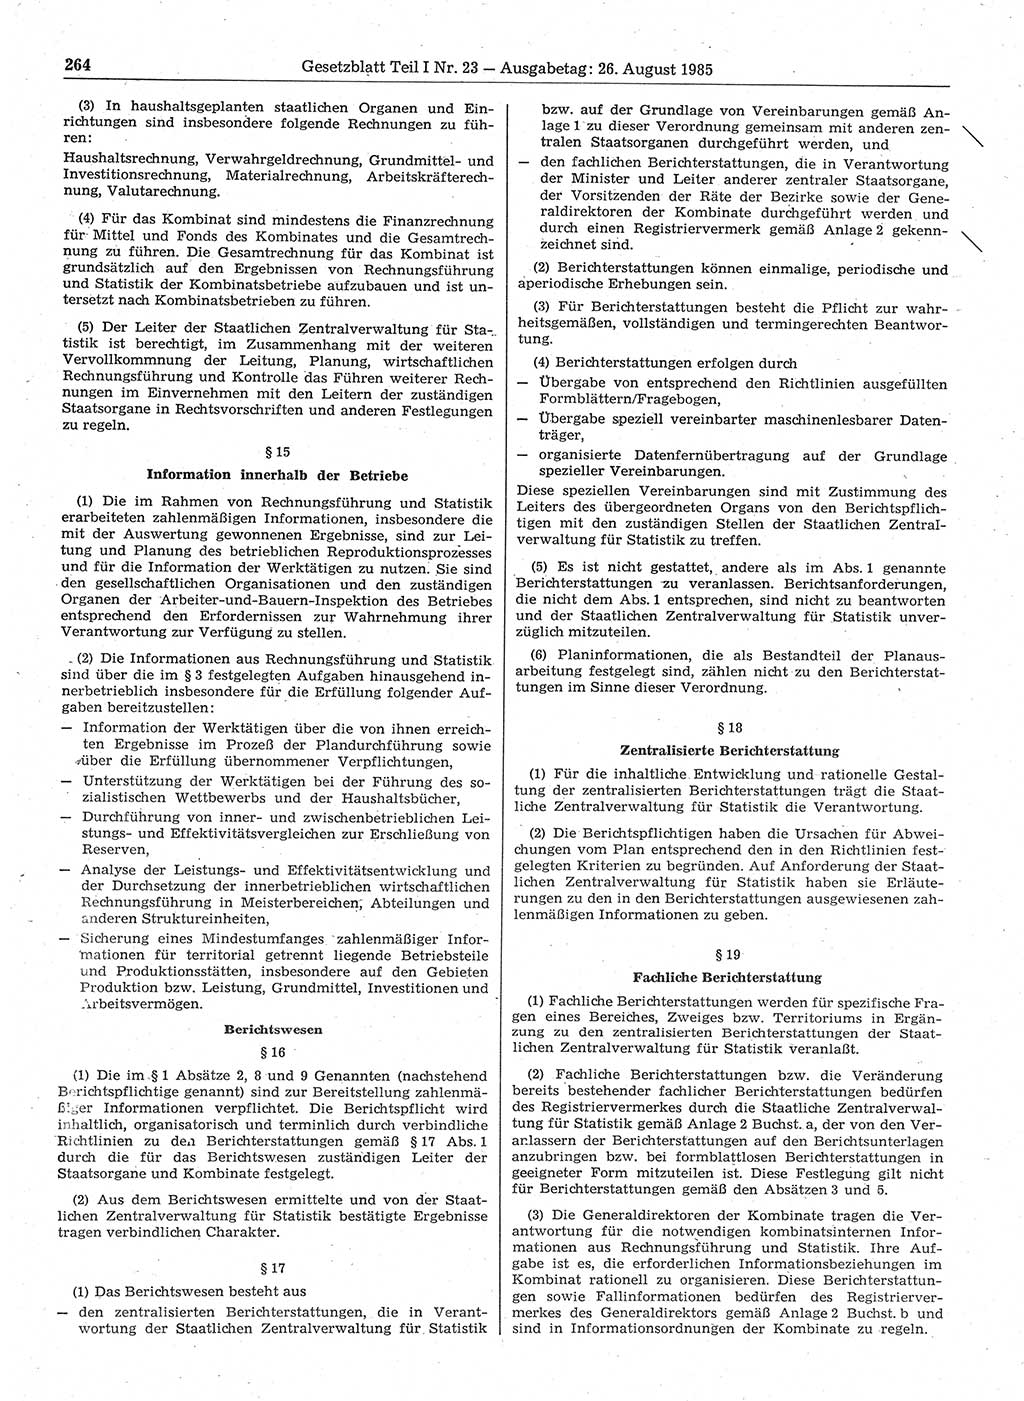 Gesetzblatt (GBl.) der Deutschen Demokratischen Republik (DDR) Teil Ⅰ 1985, Seite 264 (GBl. DDR Ⅰ 1985, S. 264)